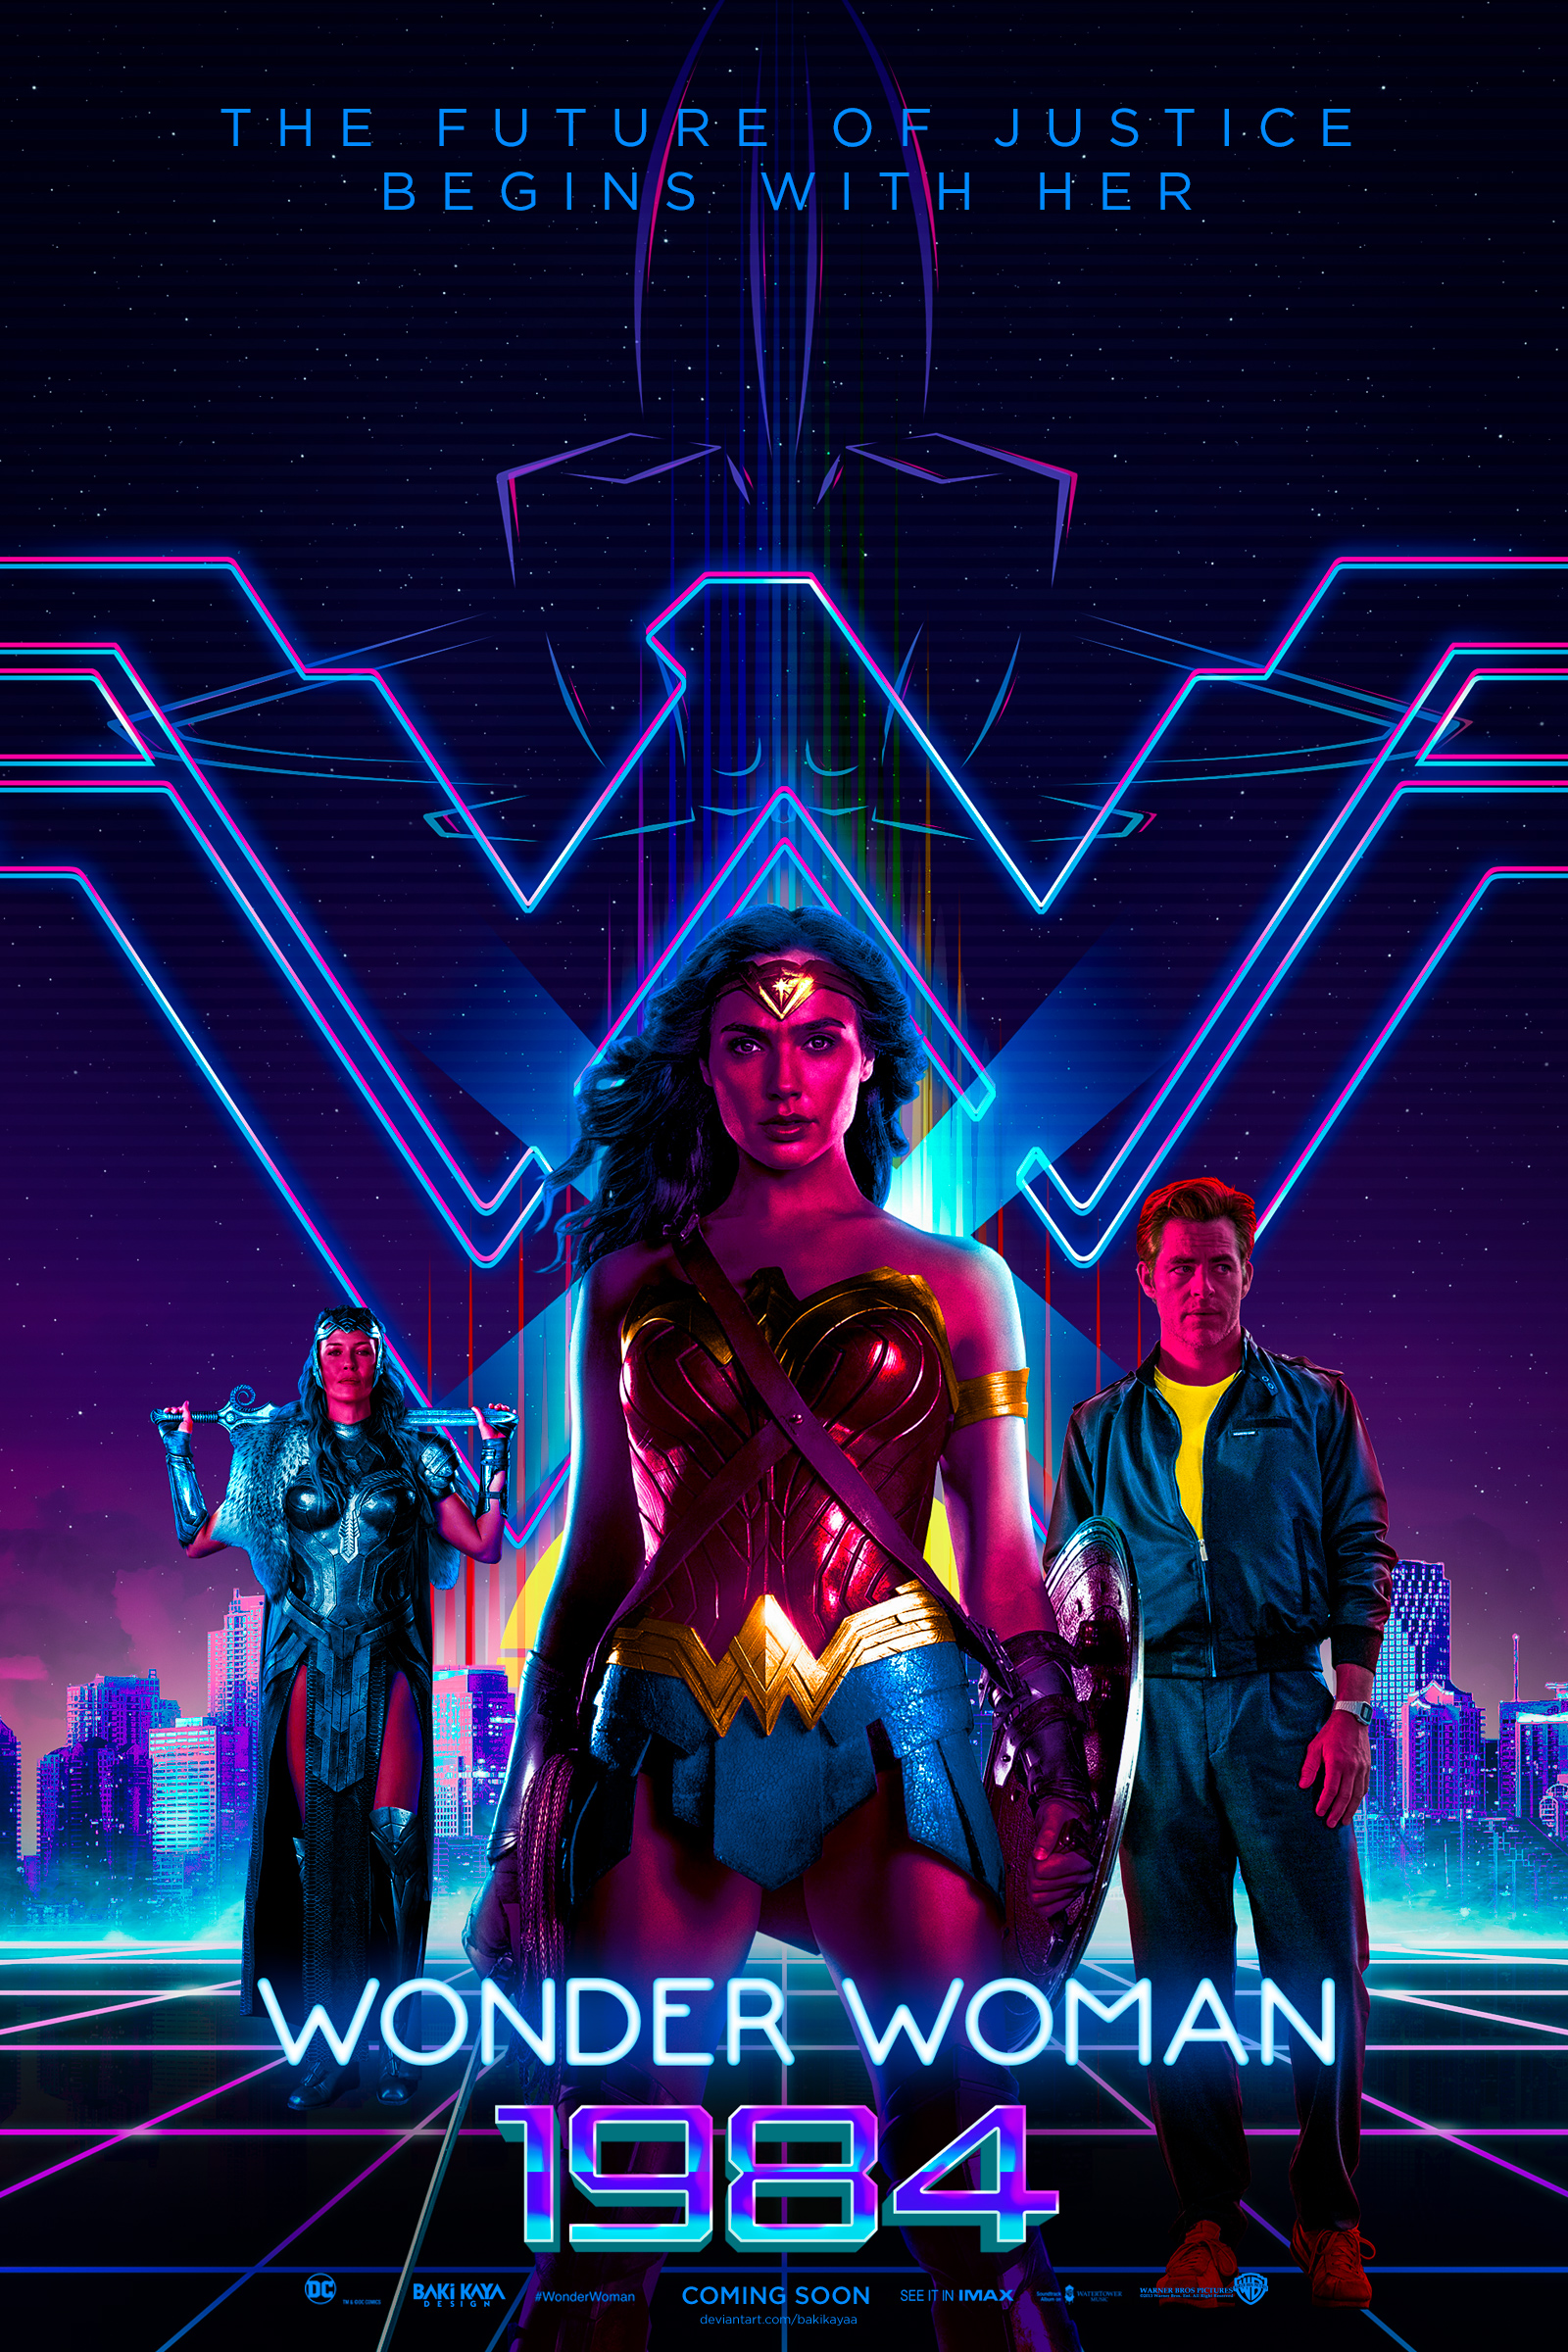 Wonder Woman 1984 (2019) Poster by bakikayaa on DeviantArt